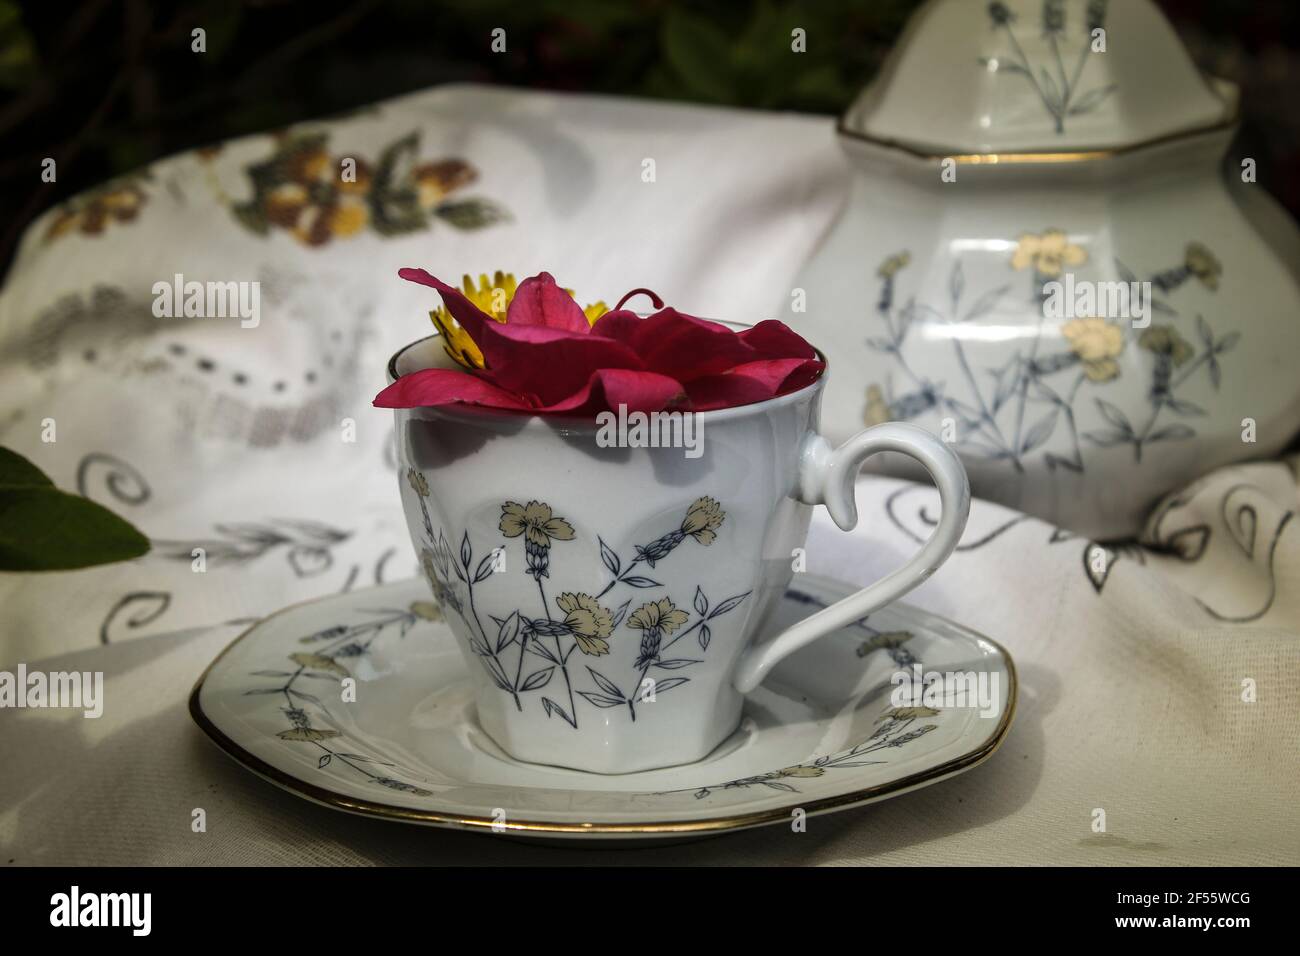 Splendid Kräutertee-Set bestehend aus einer Tasse und Zucker Schüssel auf einem alten bestickten Tischdecke platziert, in der Tasse Blumen, alle im Vintage-Ton Stockfoto